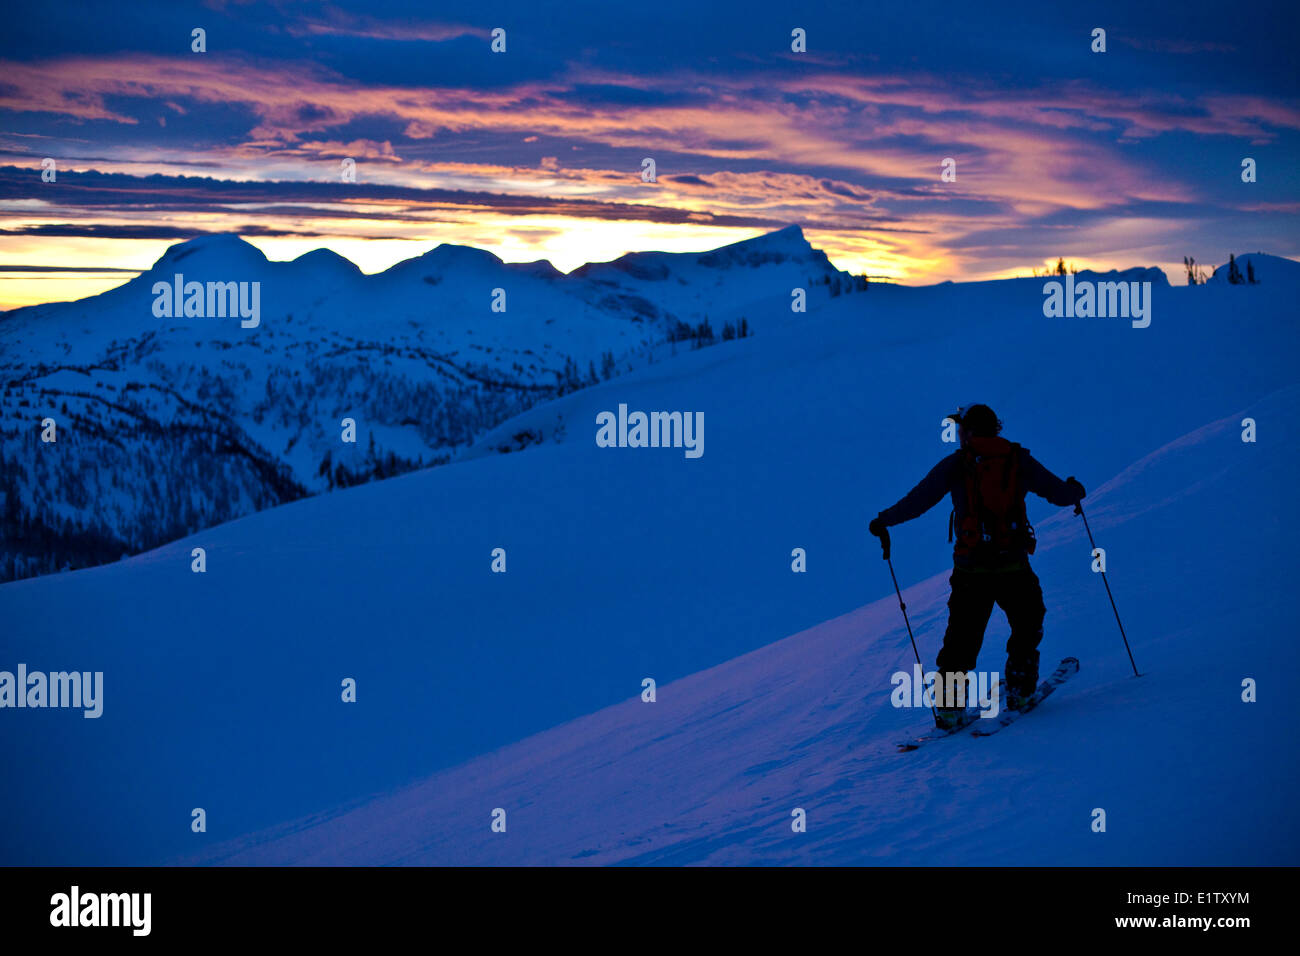 Un skieur d'arrière-pays prend un moment pour admirer le coucher du soleil au sol, l'arrière-pays de montagnes Monashee, Revelstoke, BC Banque D'Images